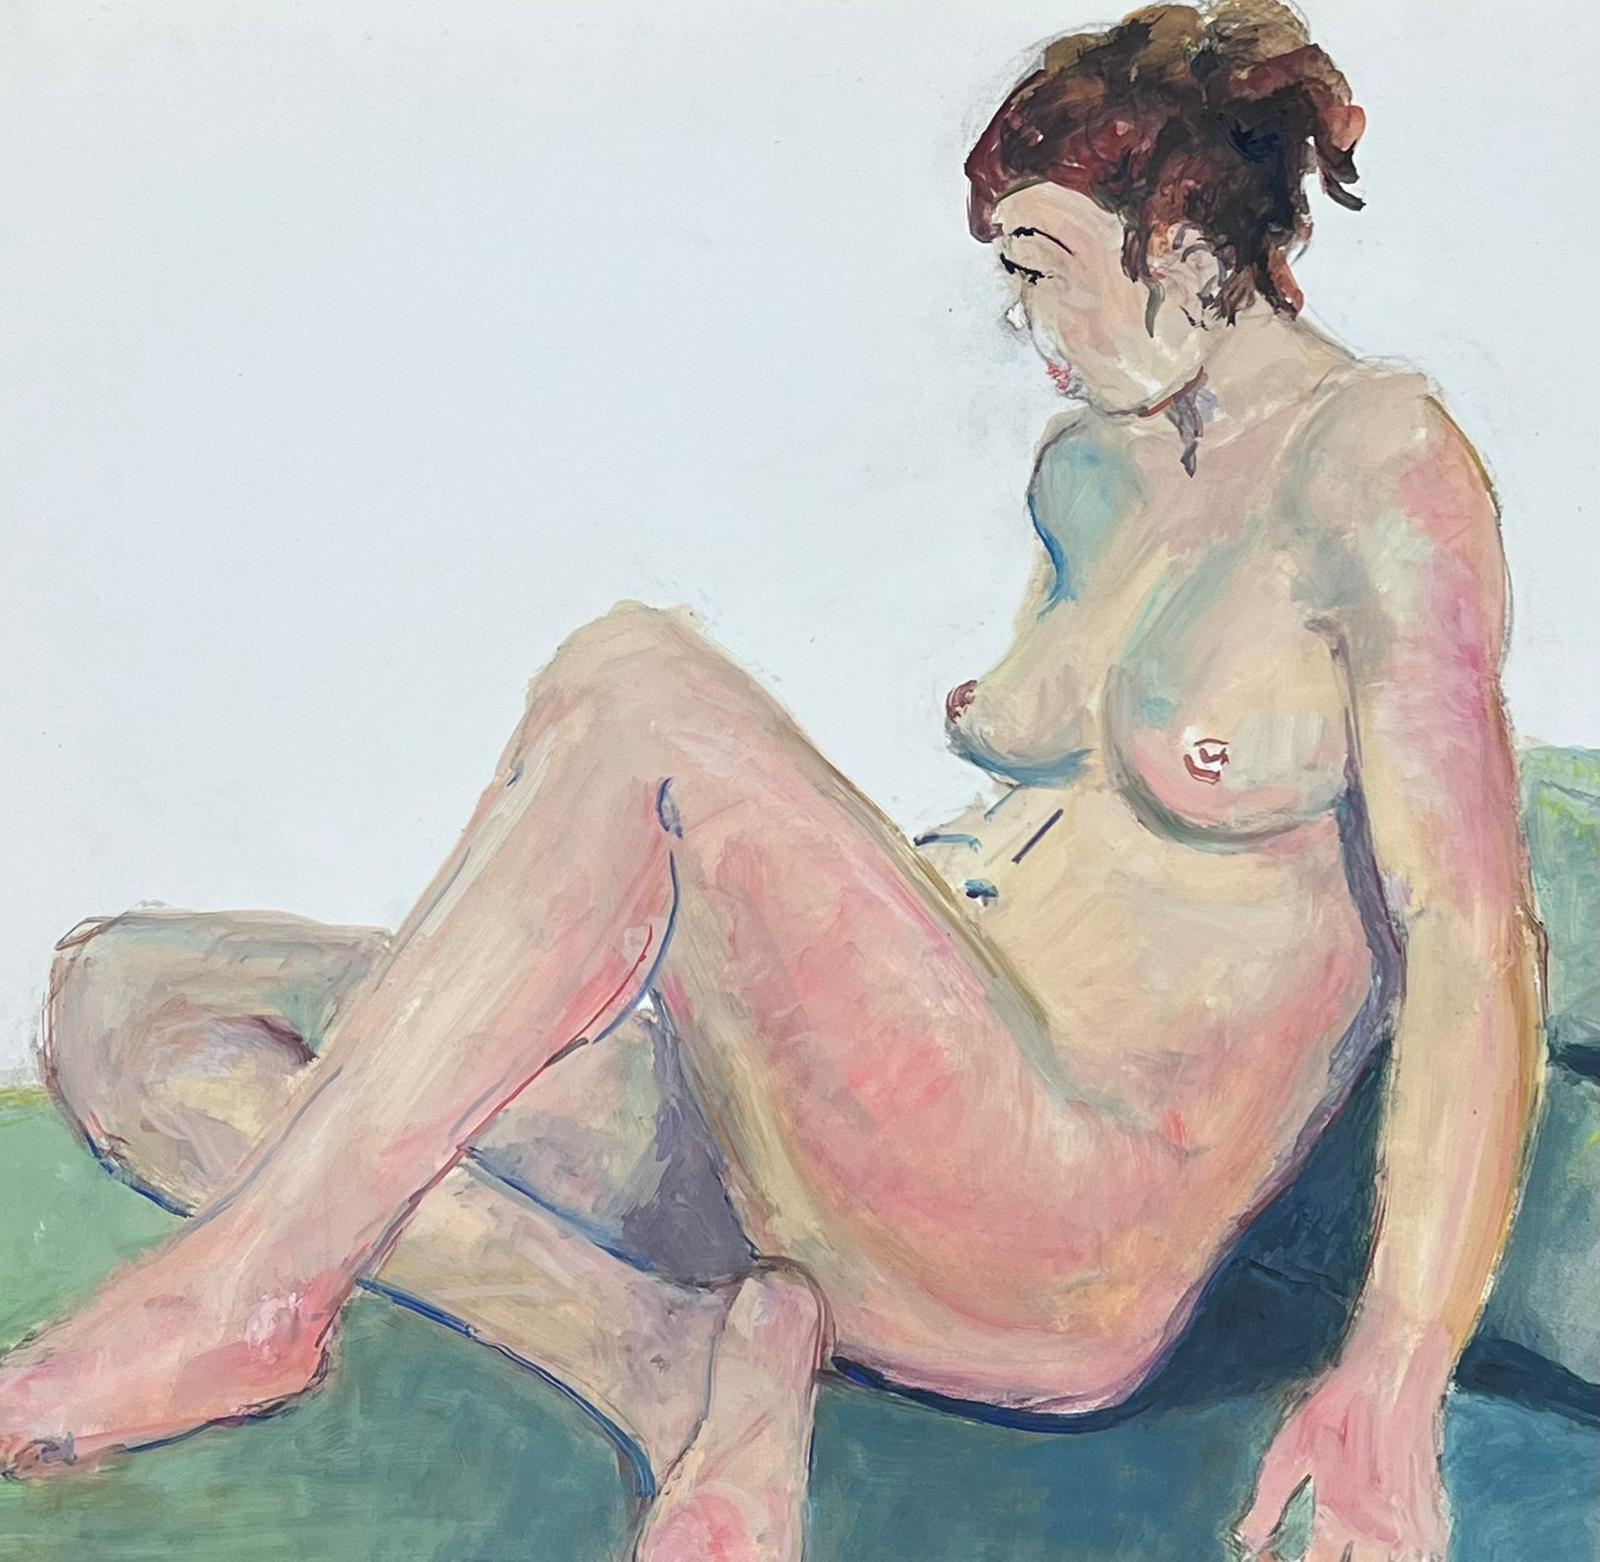 Liegesessel, Akt, Modell, französisches modernistisches Gemälde der Provence, 1970er Jahre – Painting von French Modernist